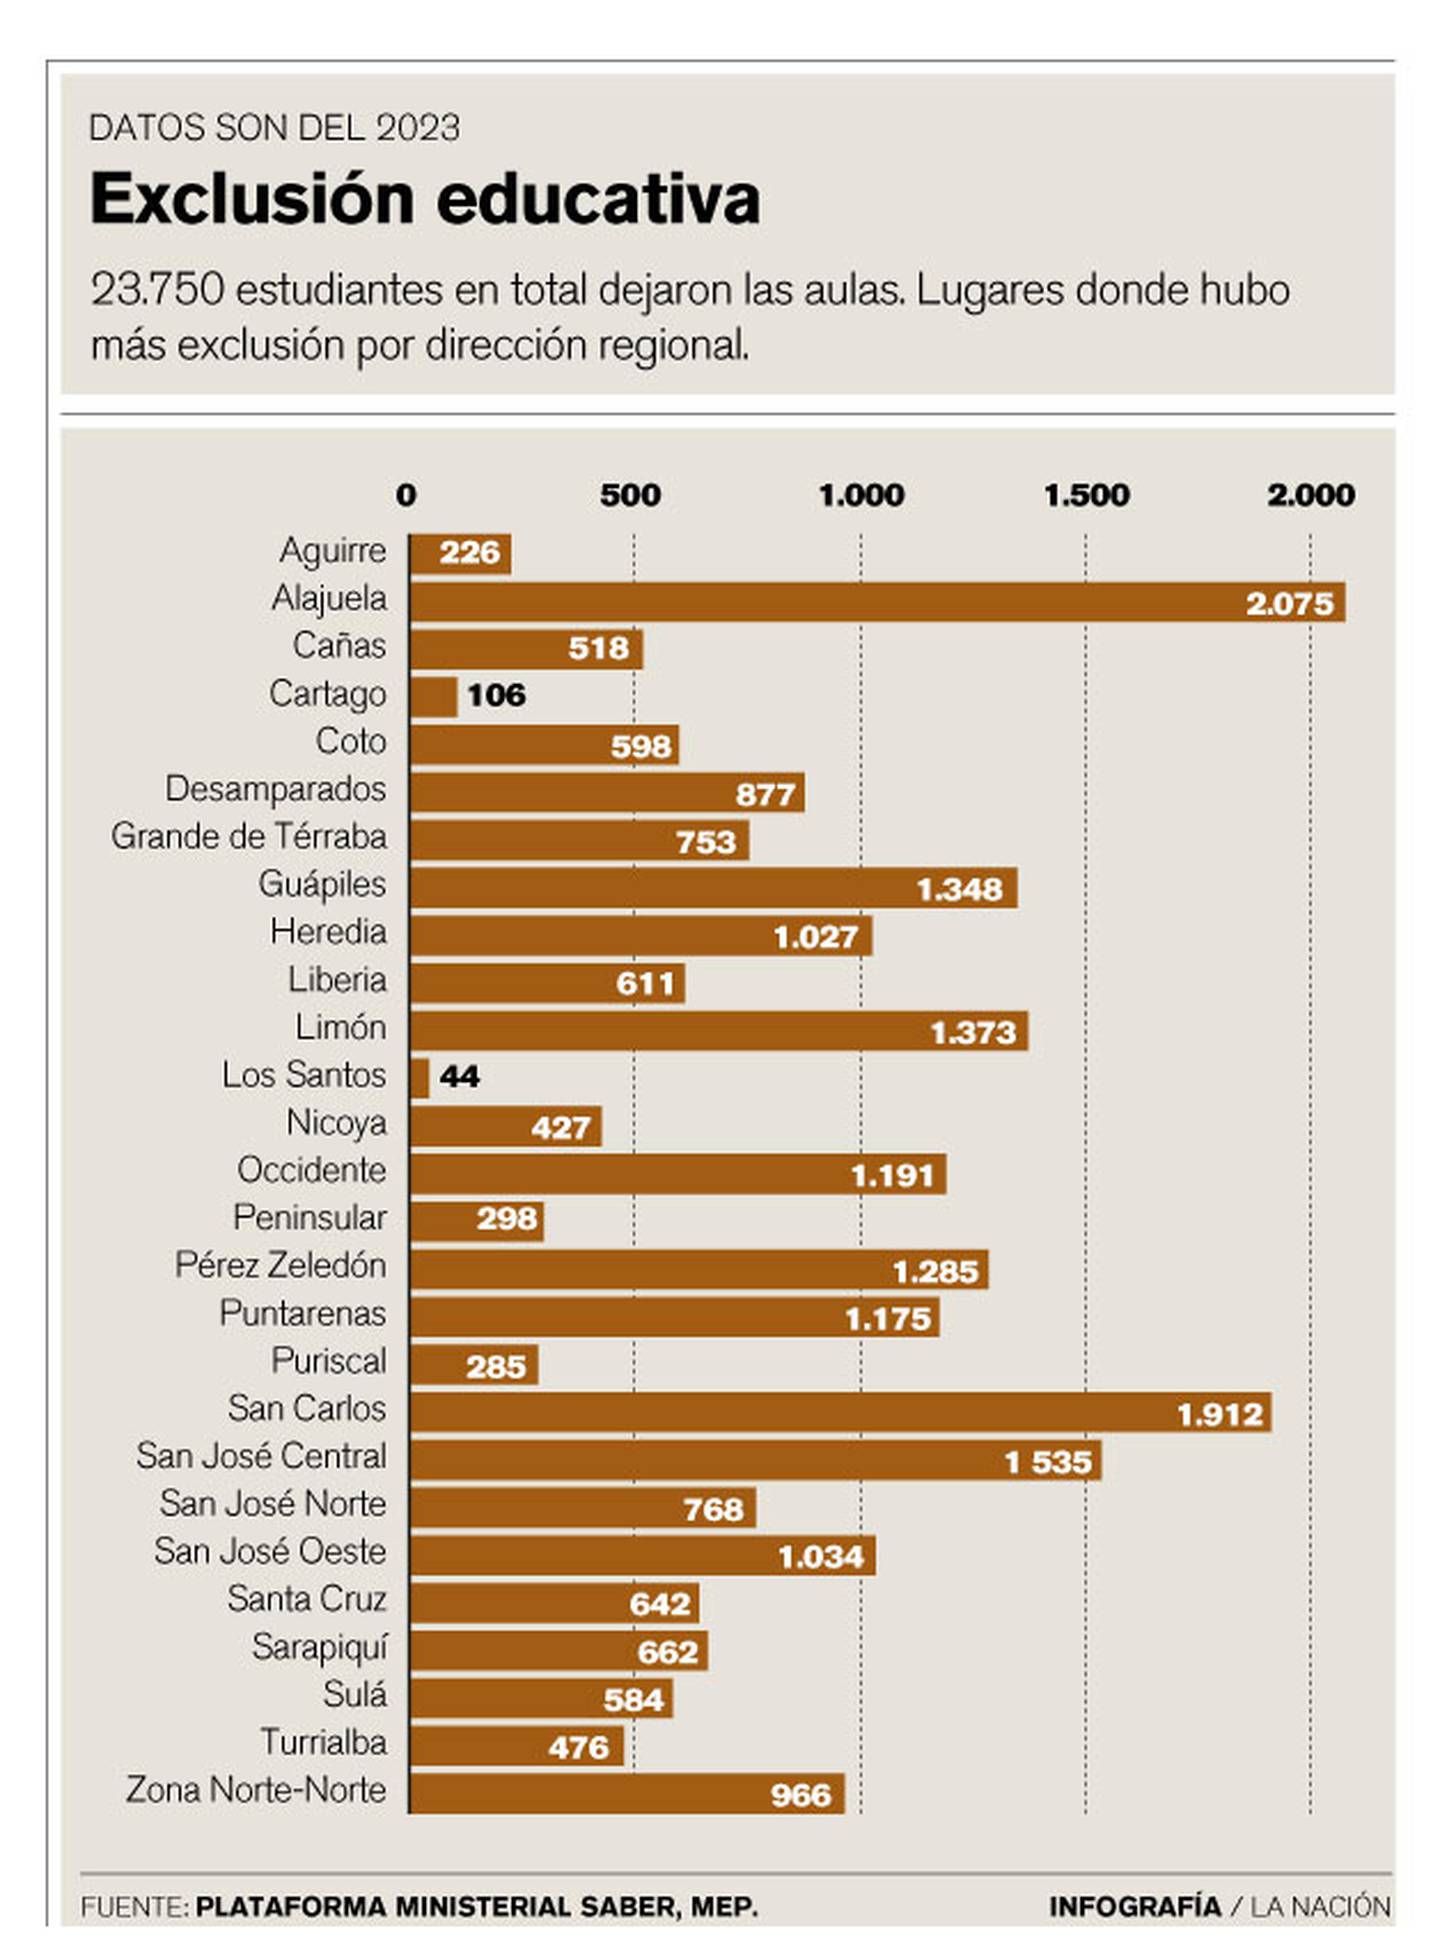 Datos sobre exclusión educativa en Costa Rica